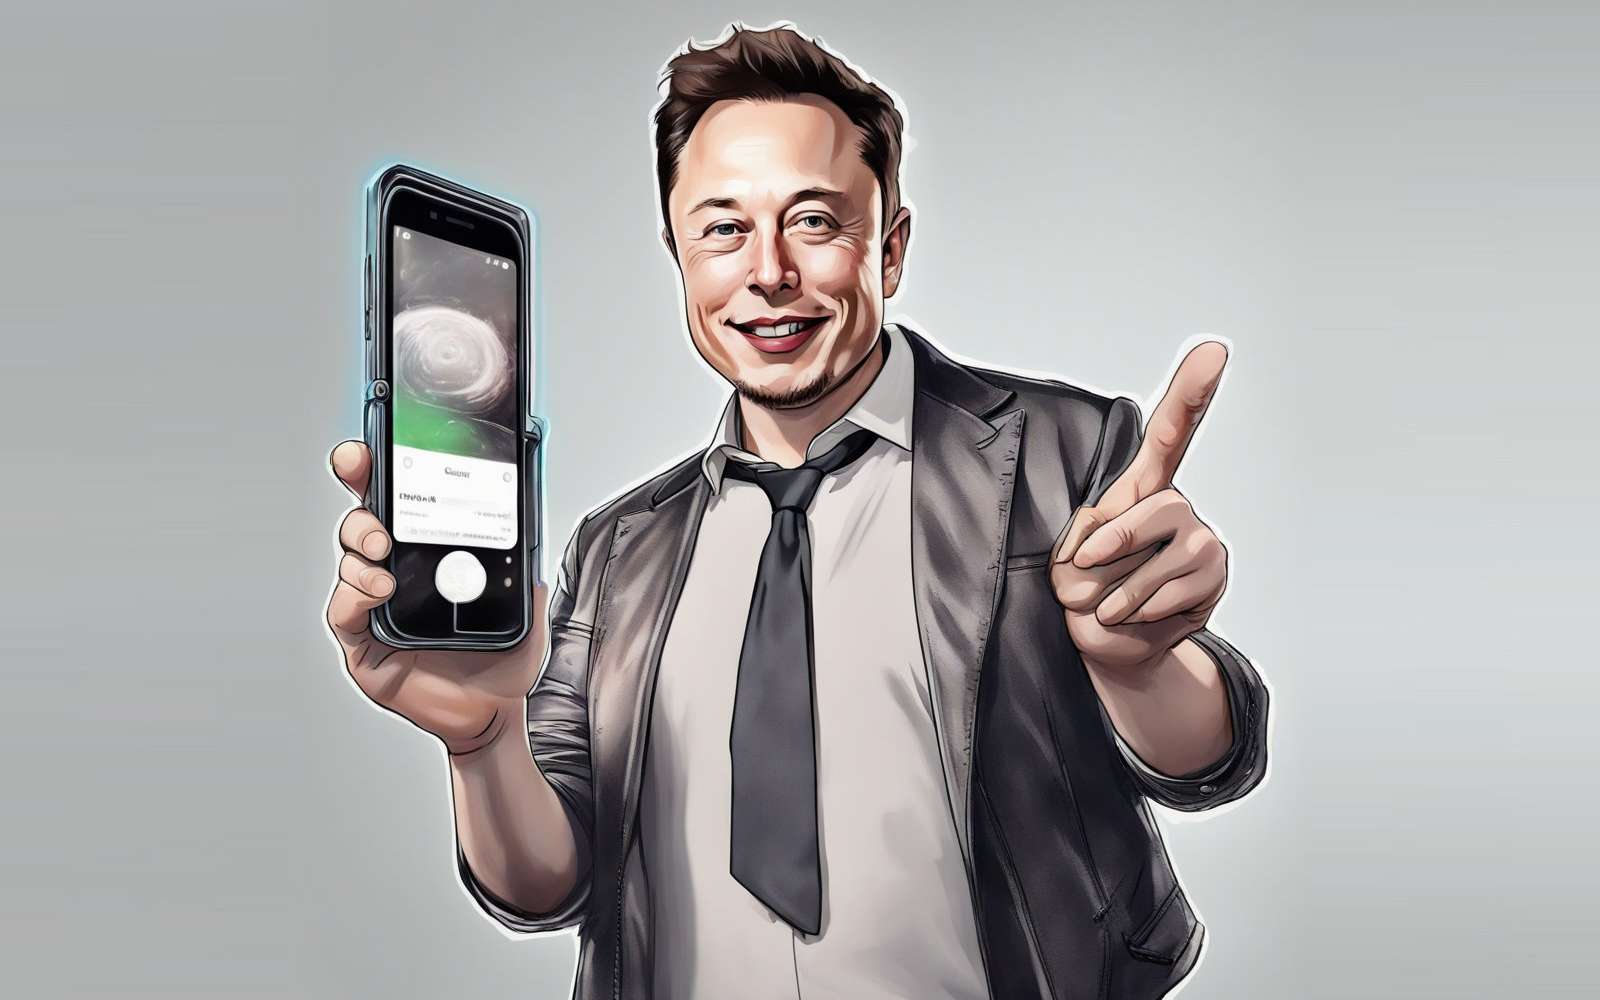 Un smartphone Tesla ? Le point sur les rumeurs d'un projet annoncé « révolutionnaire »